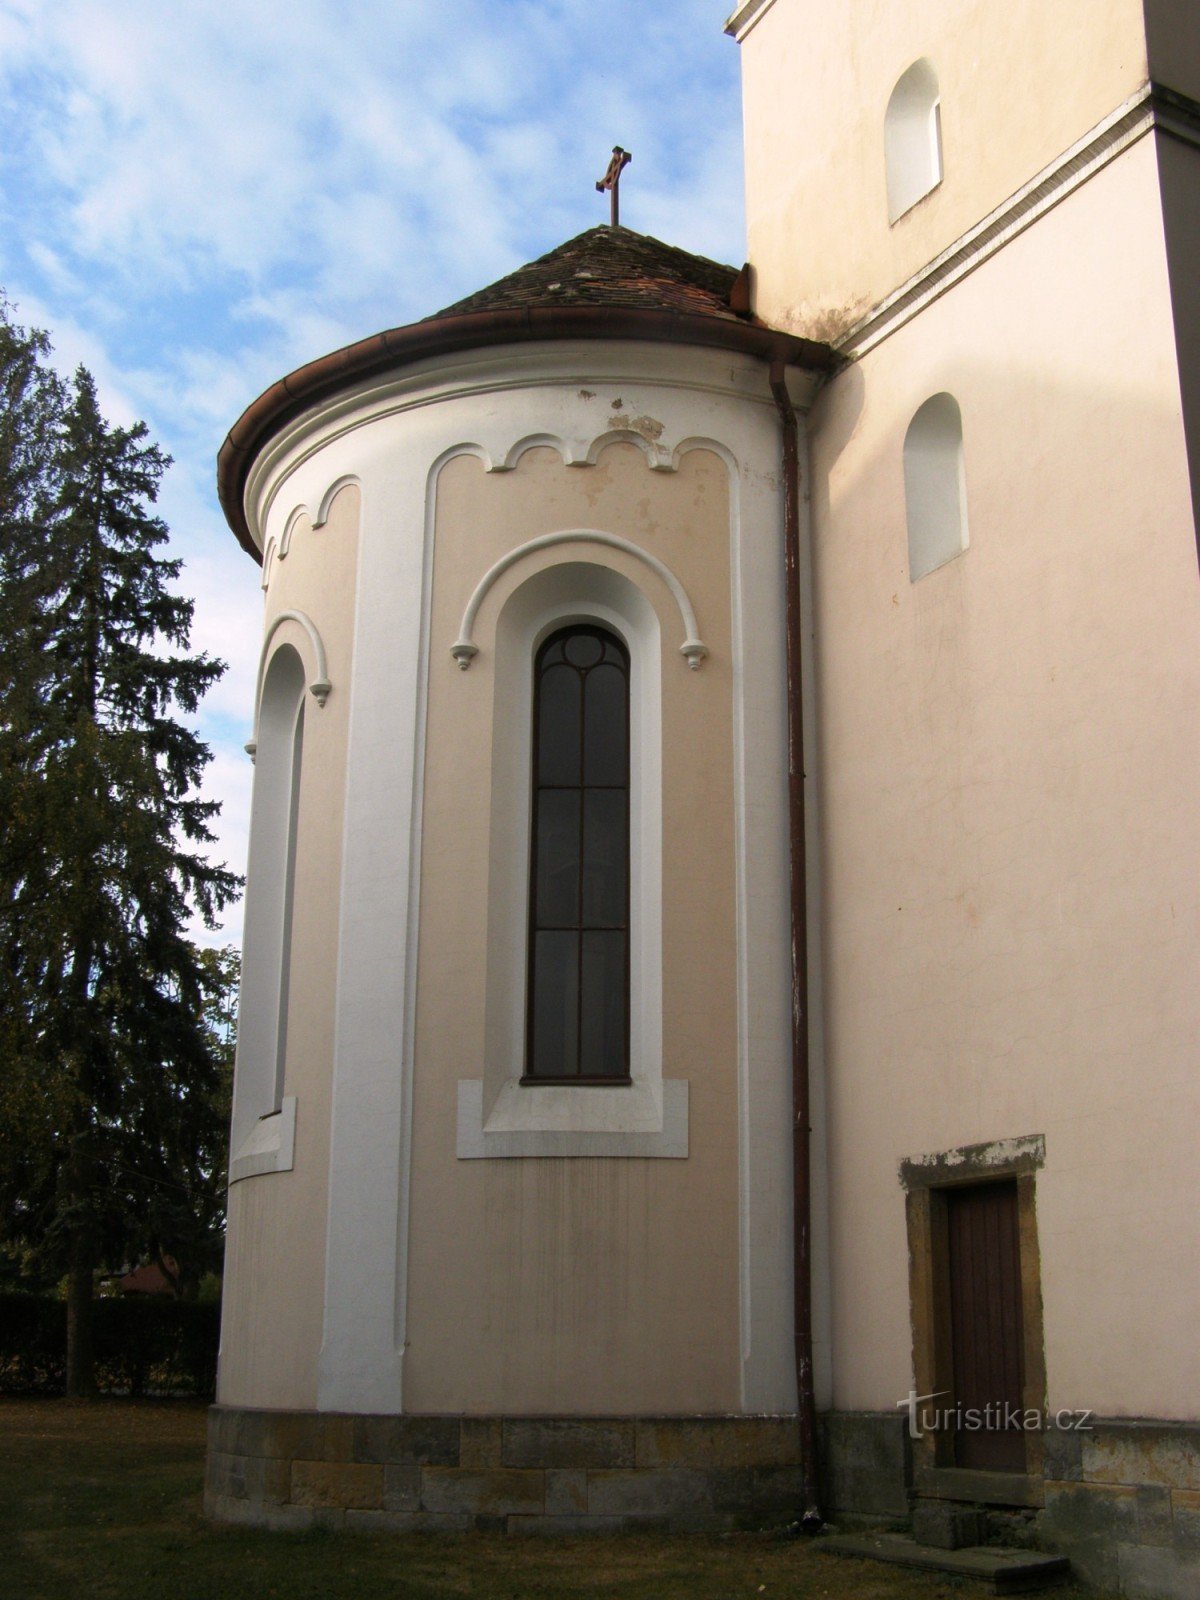 Nepolisy - igreja de St. Maria Madalena